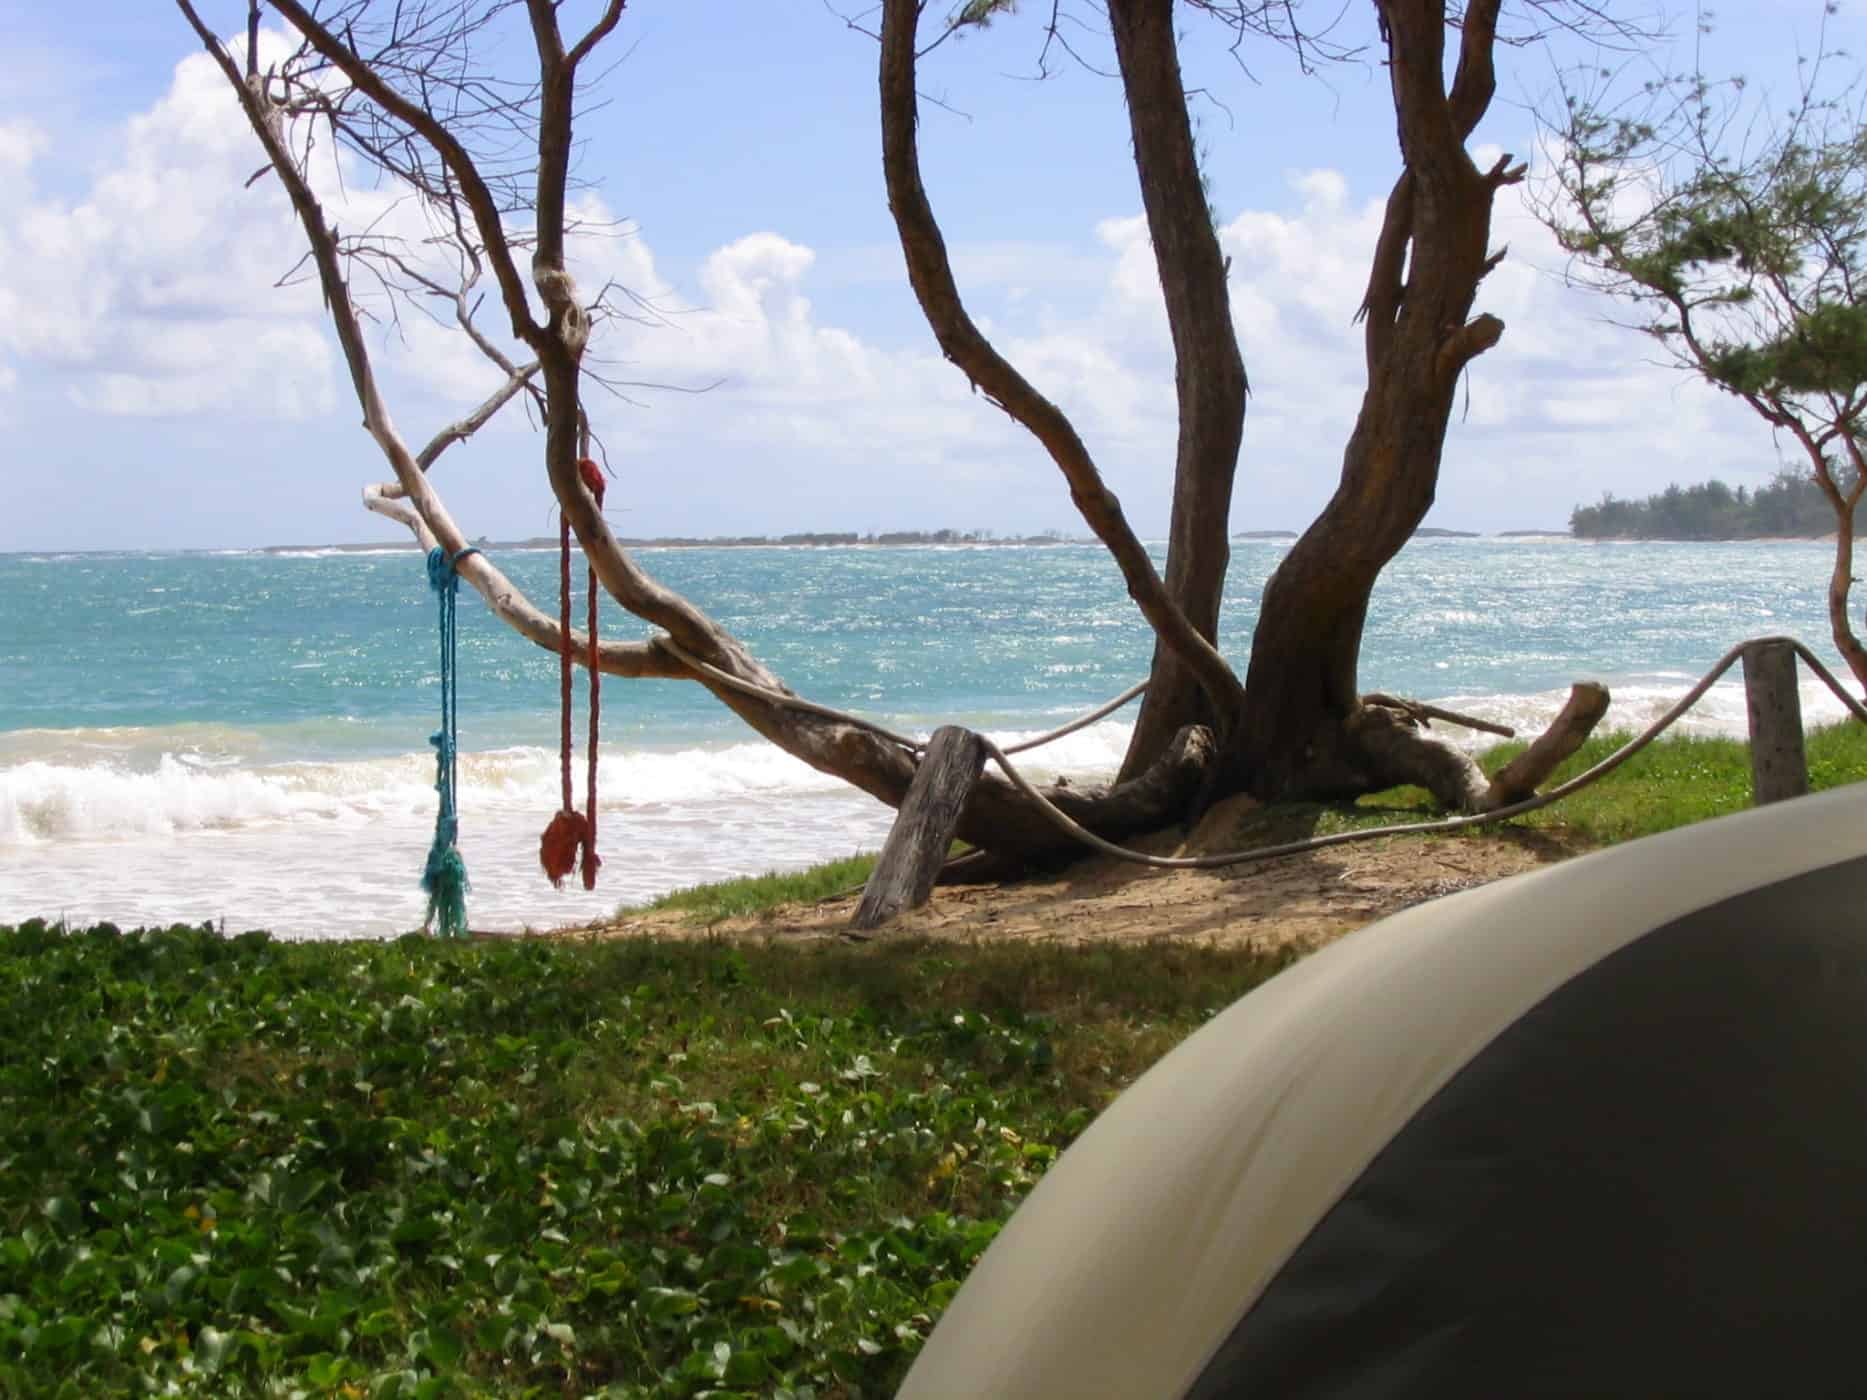 Ultimate guide to visiting Oahu - malaekahana bay camping